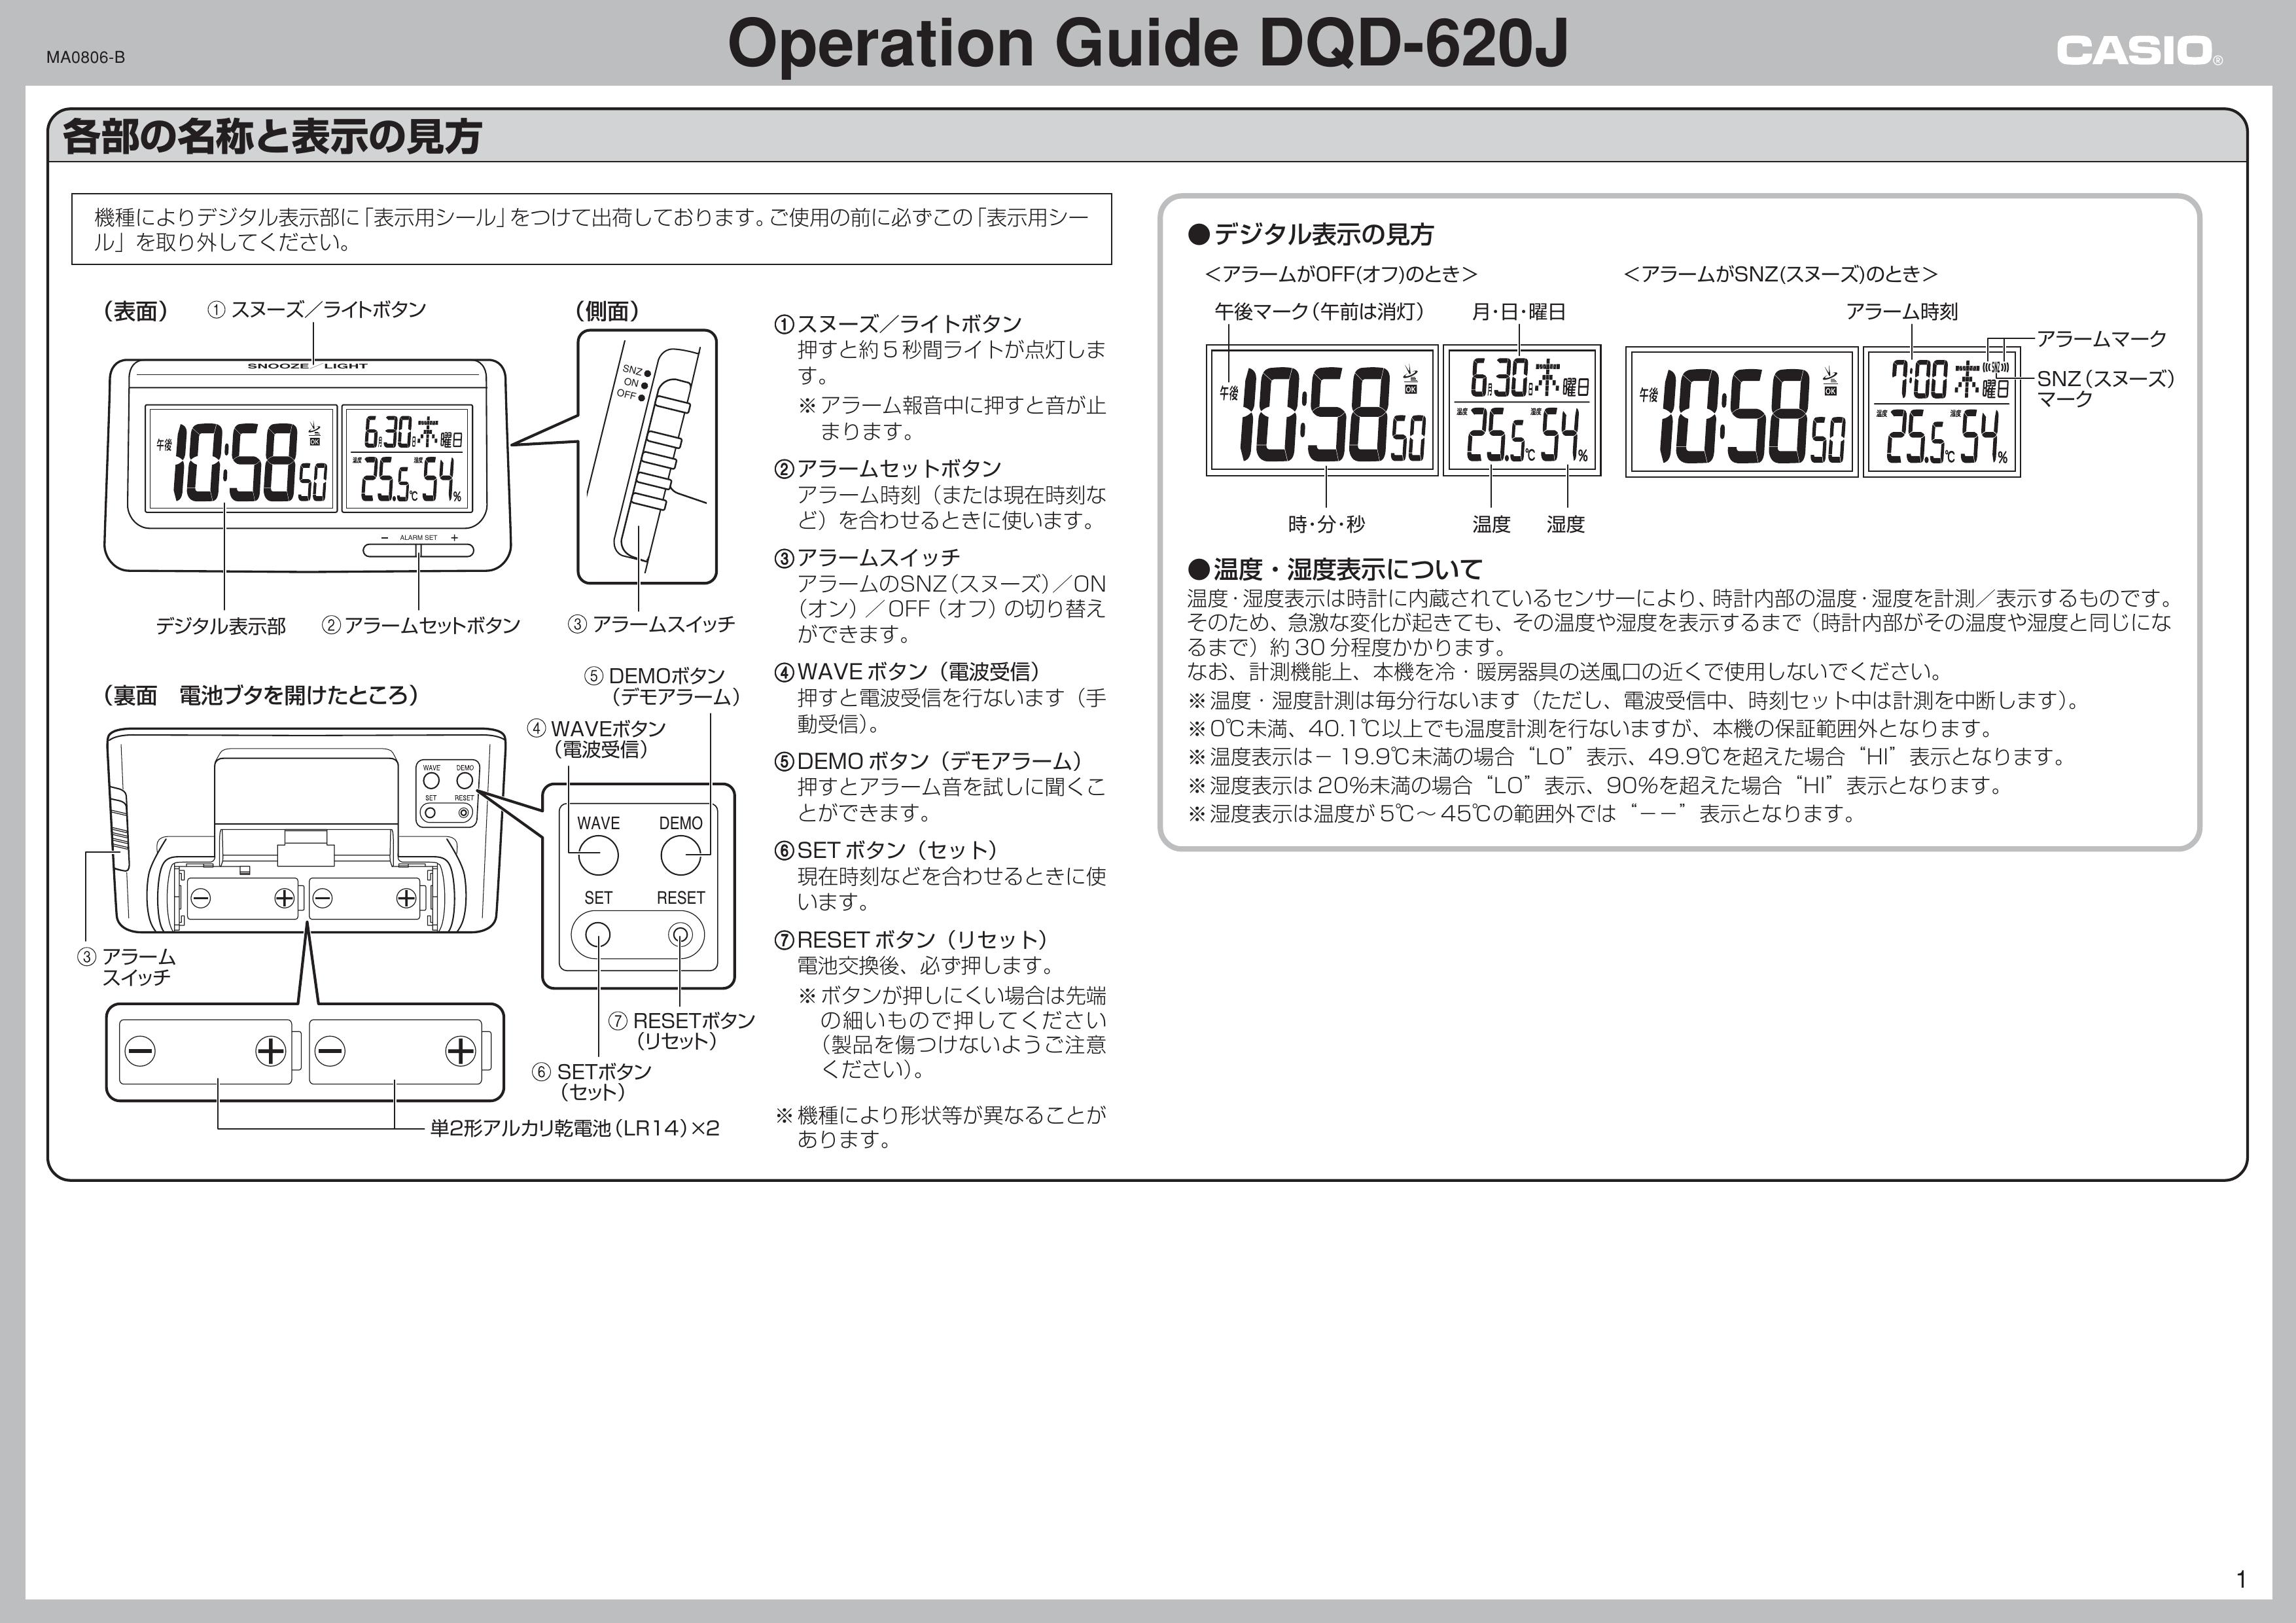 Casio MA0806-B Clock Radio User Manual